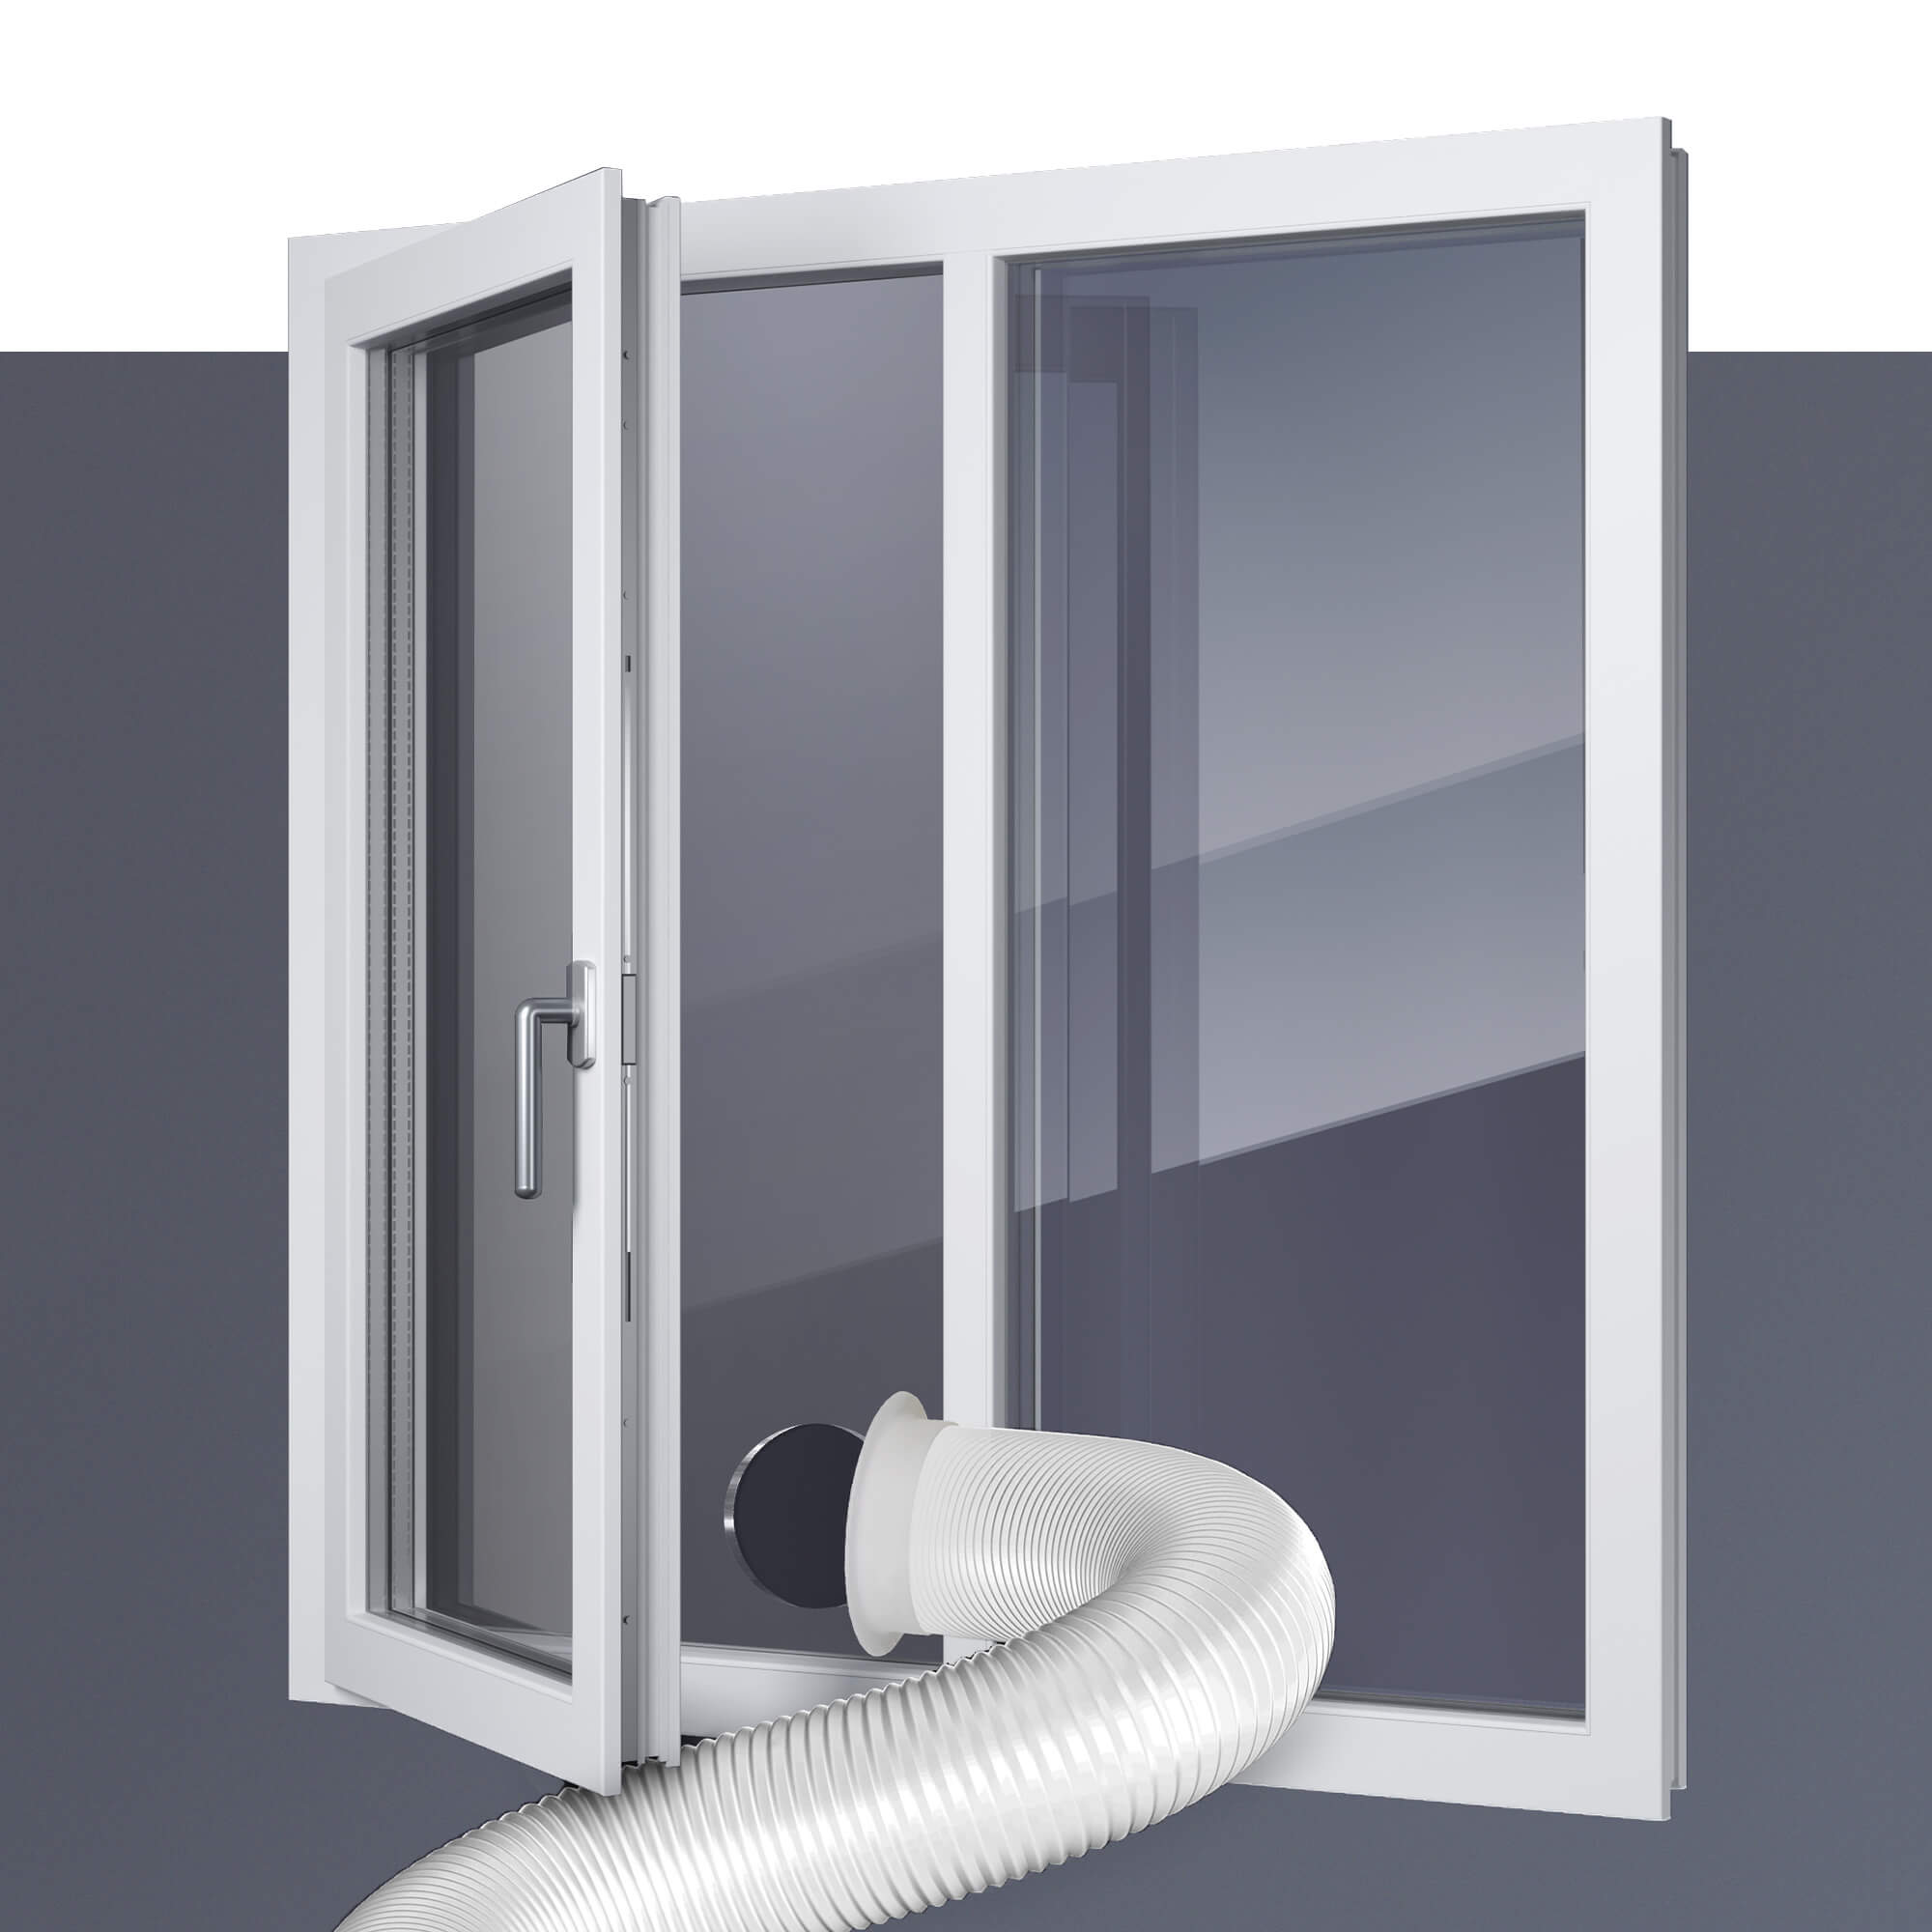 AC Abdeckung Für Fenster Einheiten Fenster Klimaanlage Abdeckung